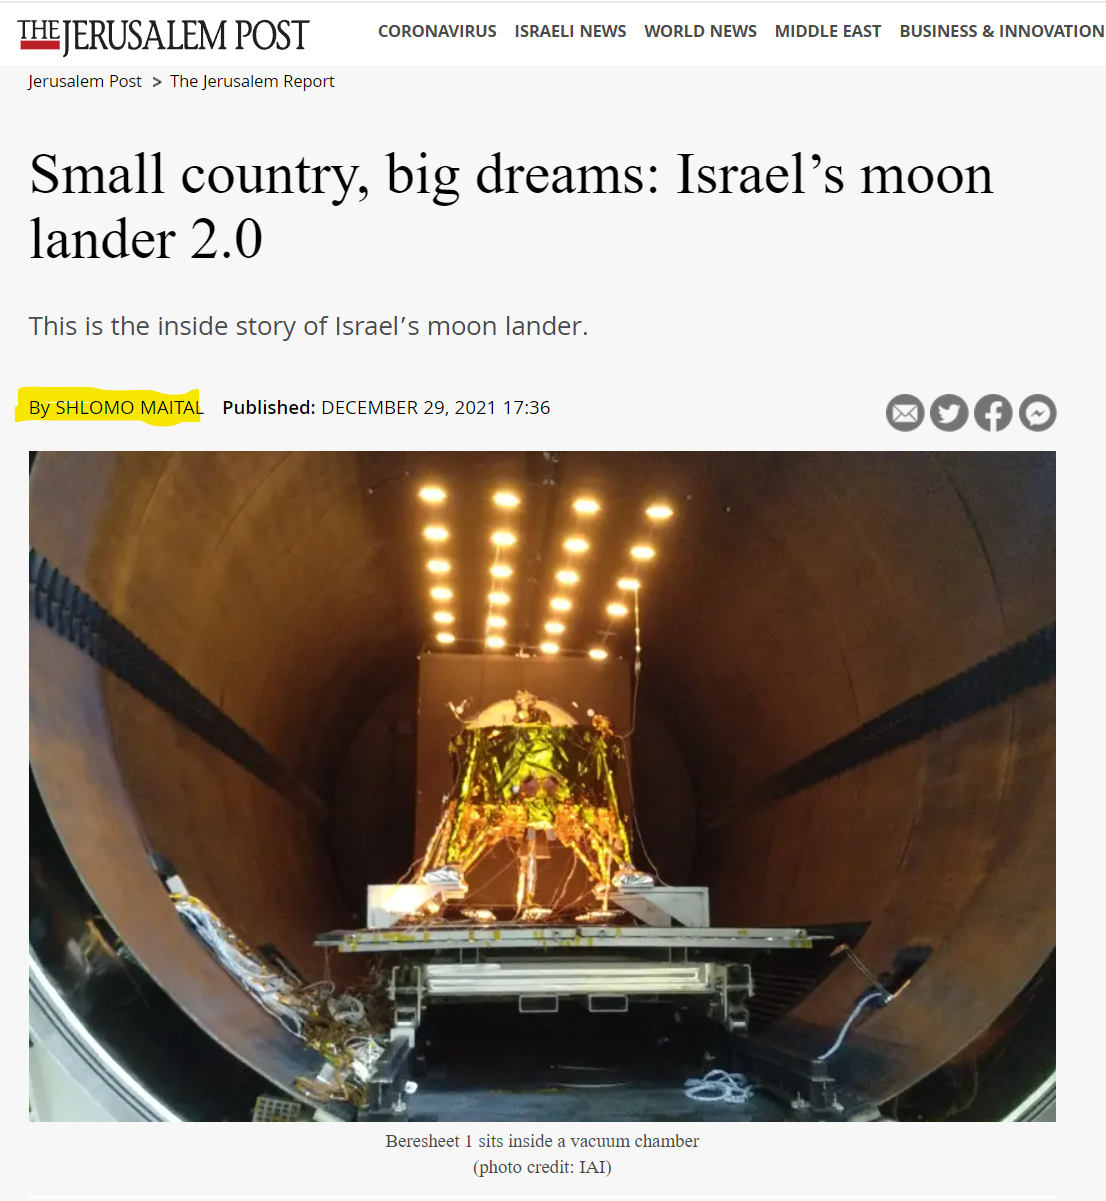 מדינה קטנה, חלומות גדולים: נחתת הירח של ישראל 2.0